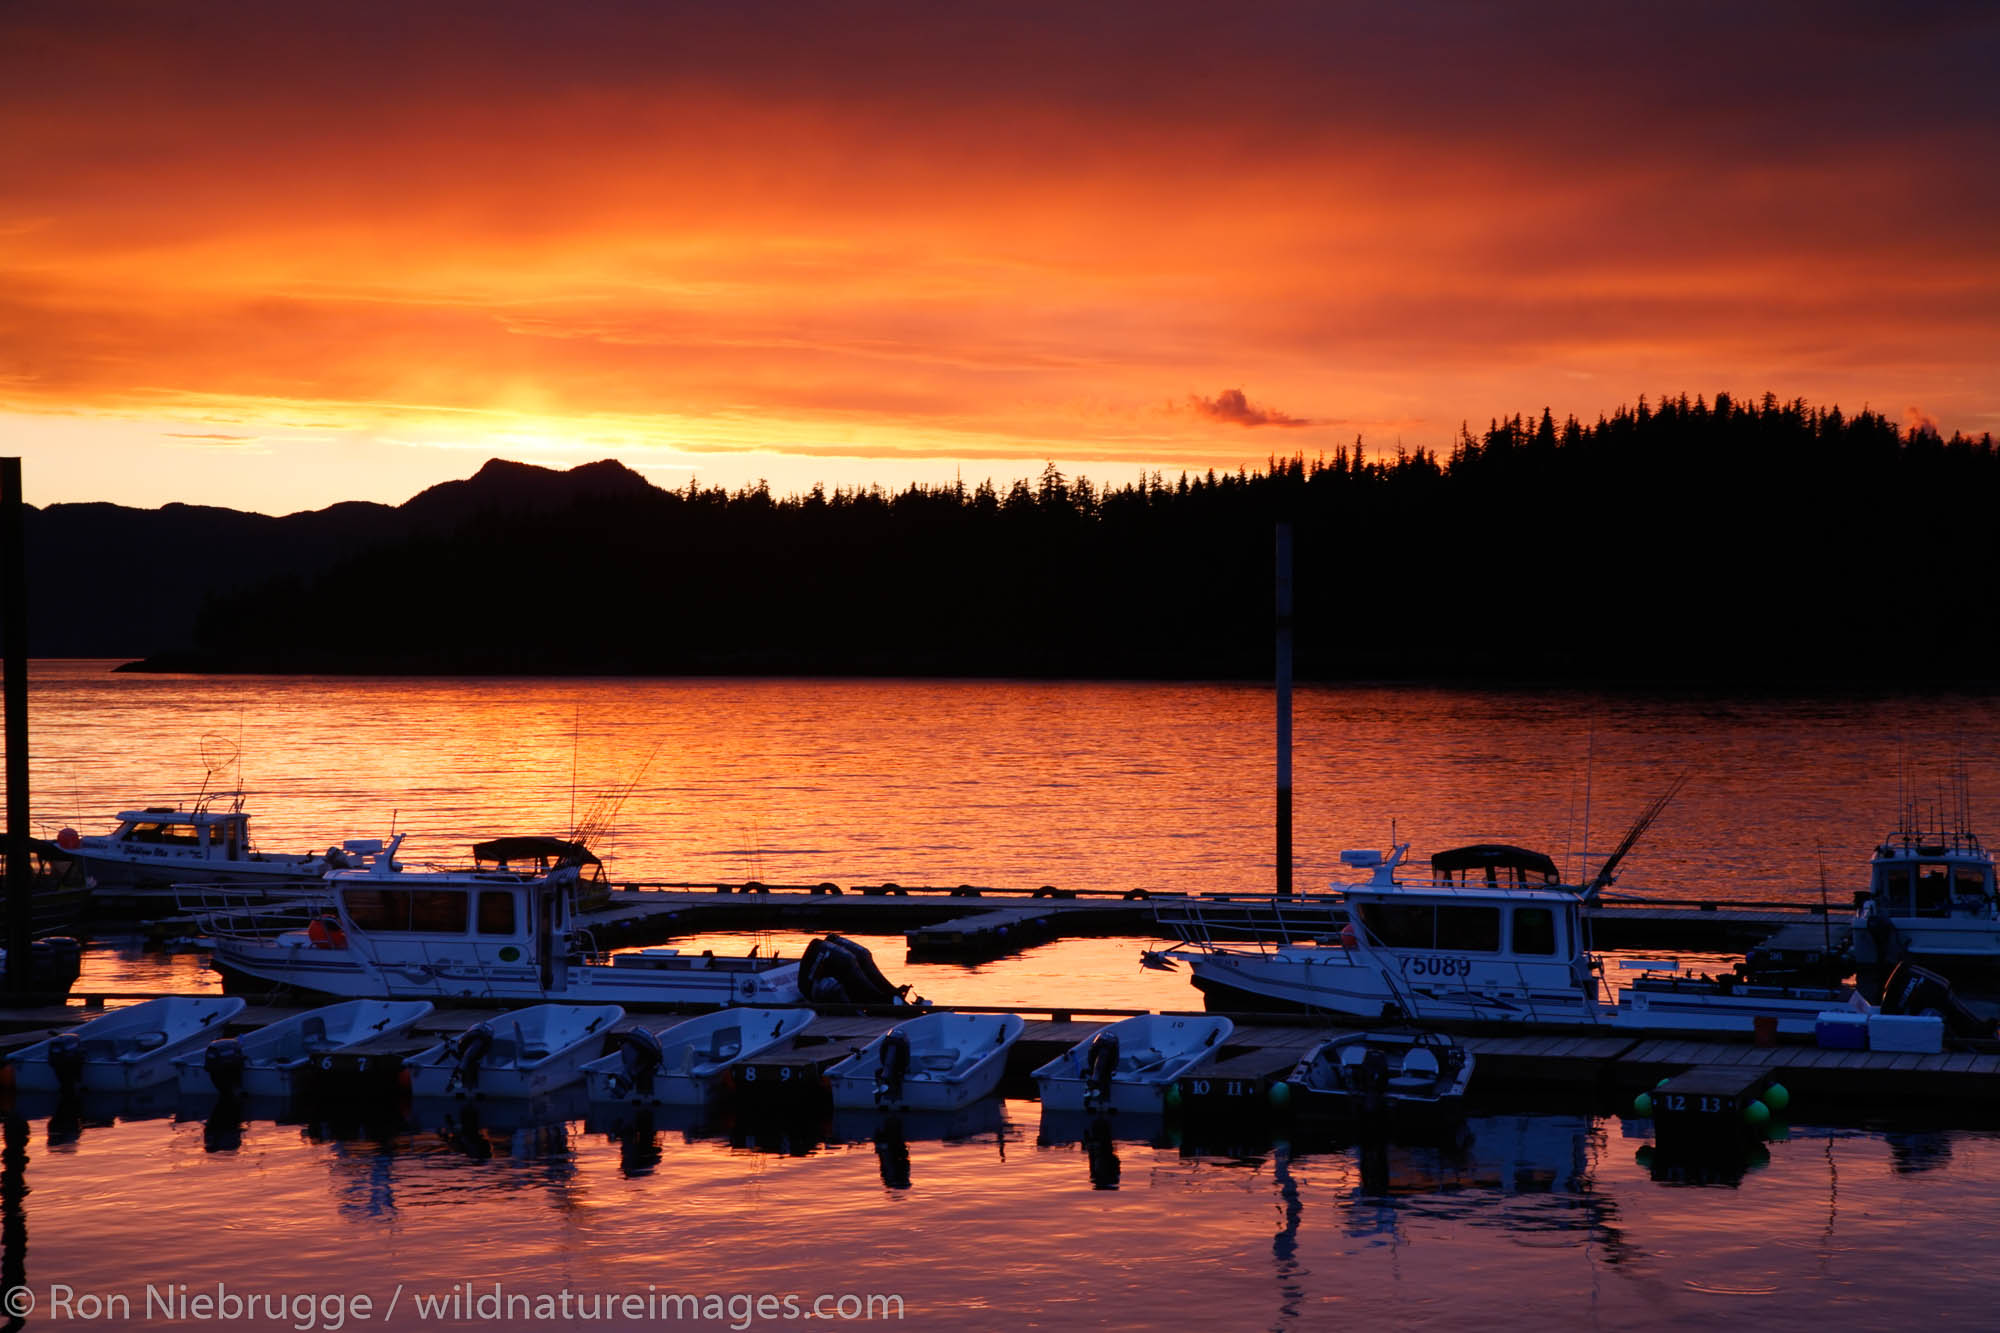 Sunset at Clover Pass Resort marina, Ketchikan, Alaska